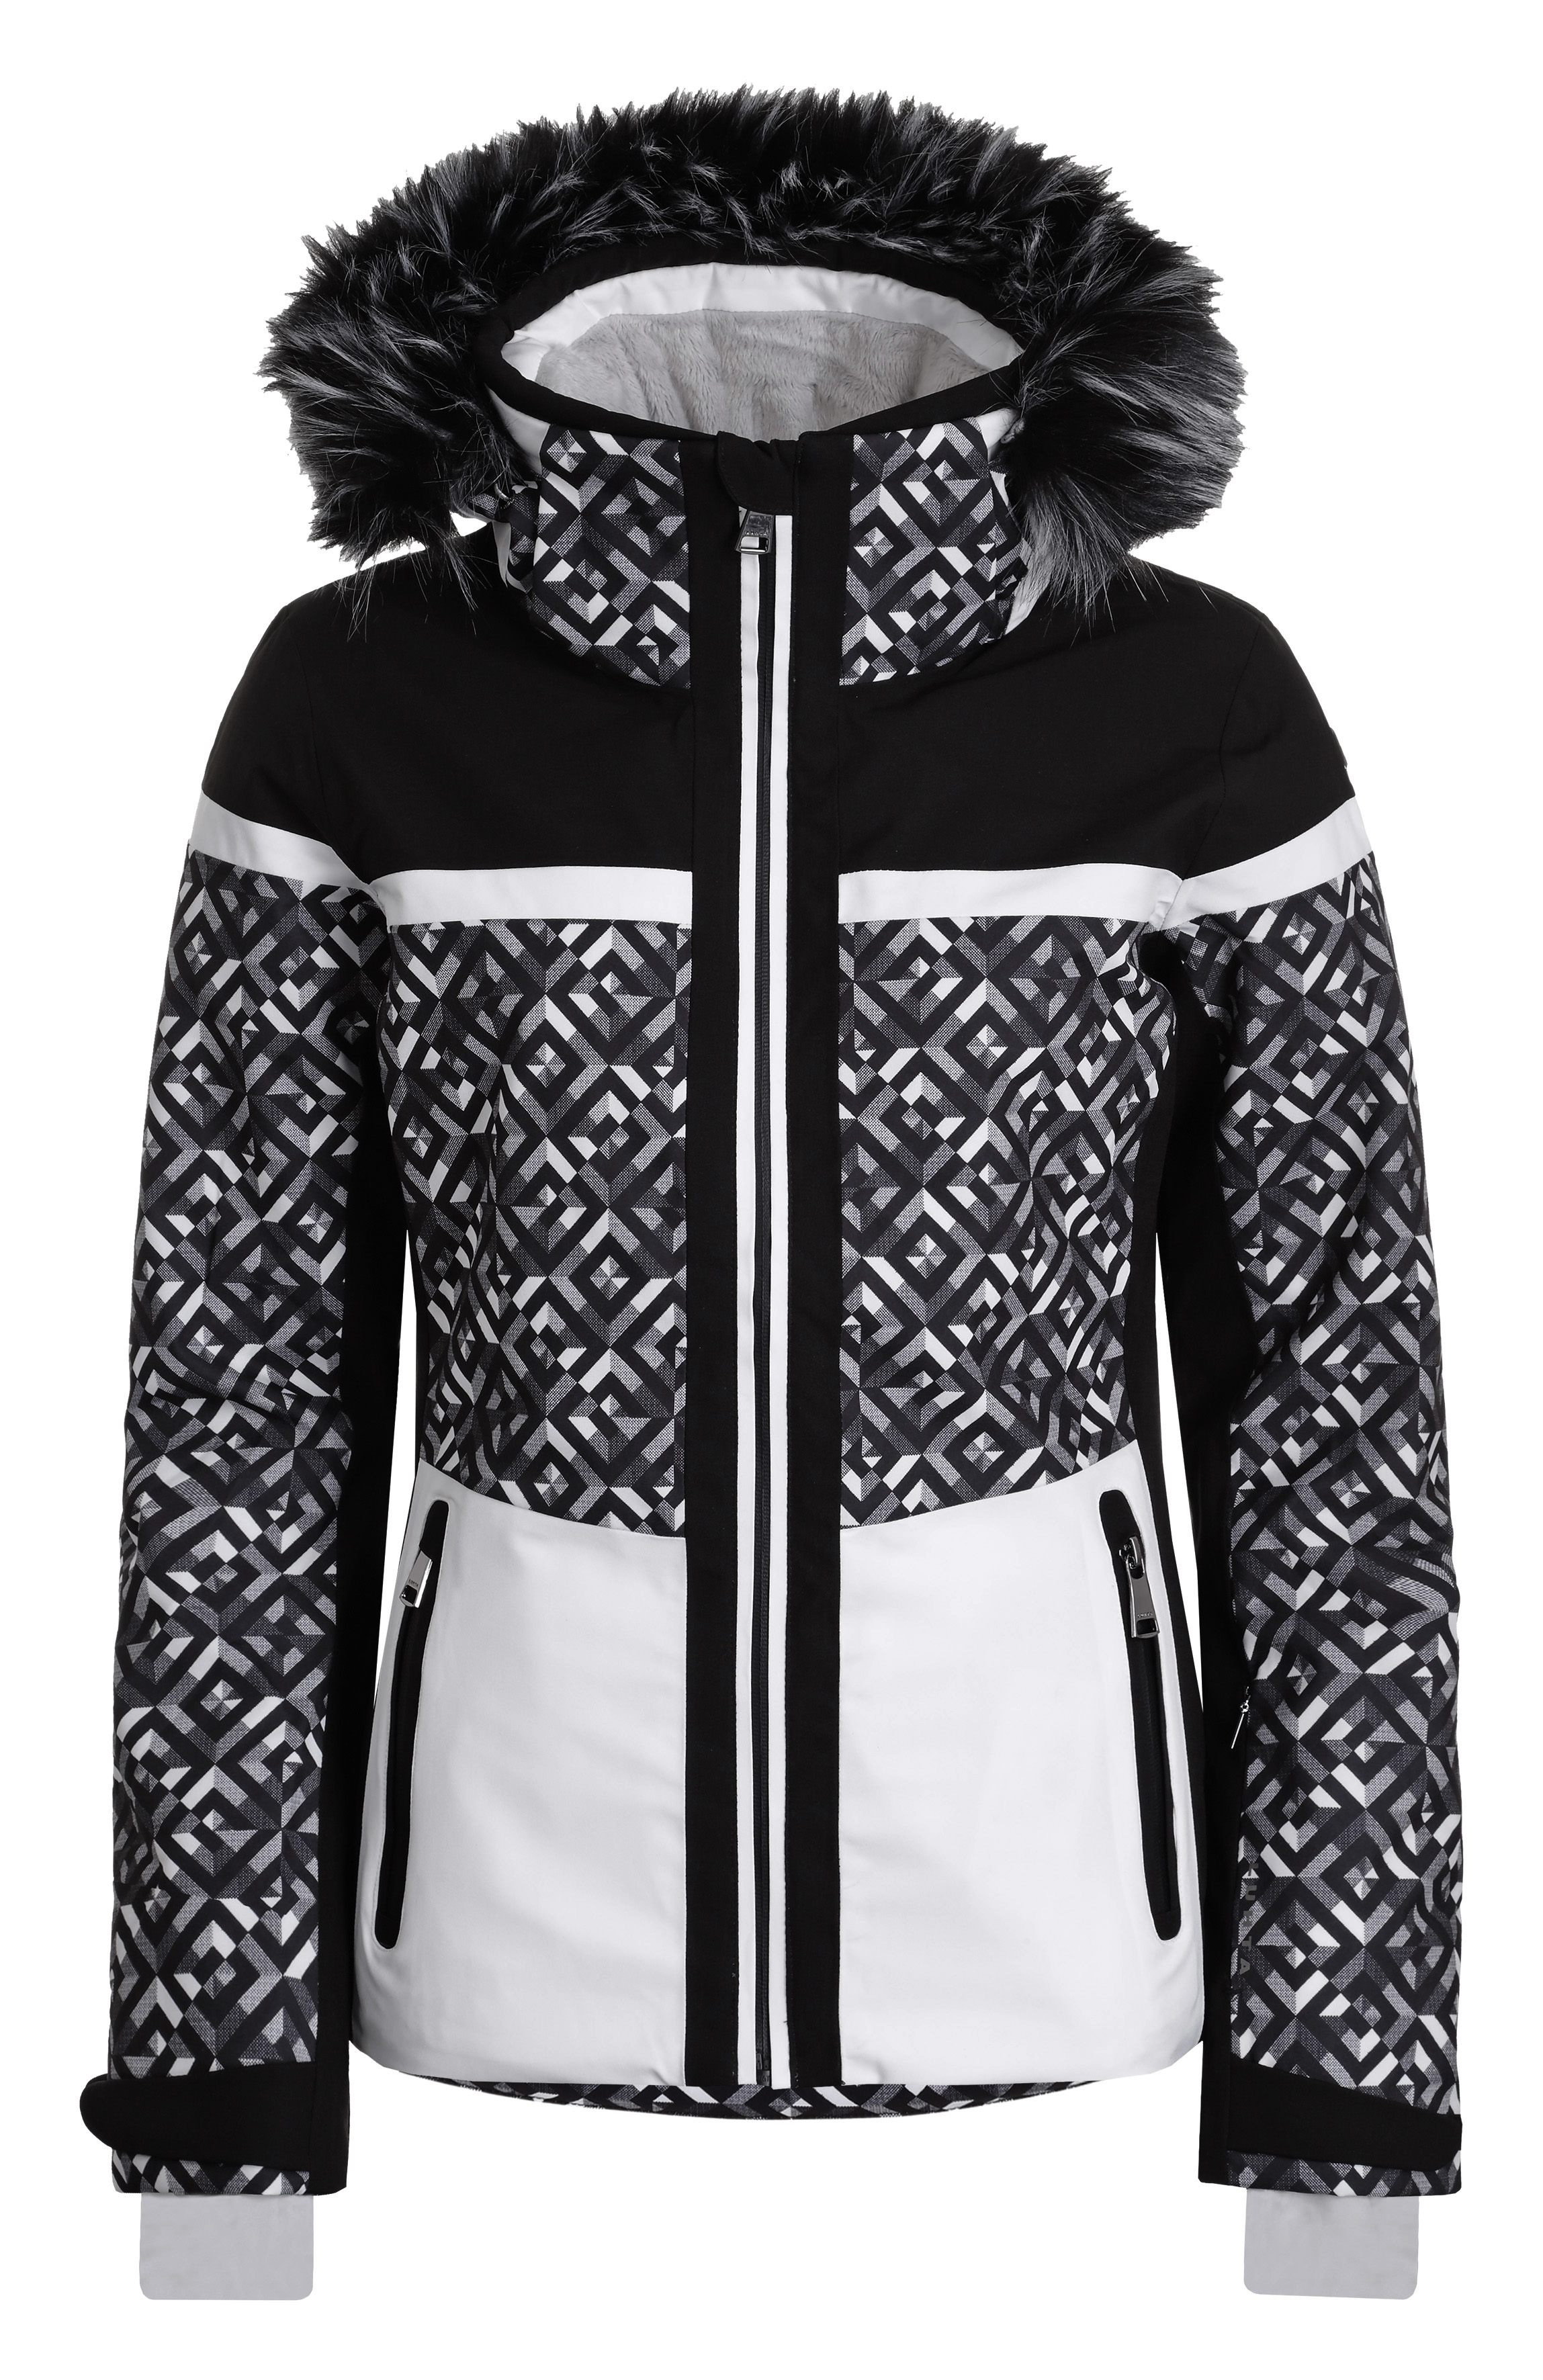 Dámská luxusní lyžařská bunda Luhta Enbolstad L7 s kožešinou černá/bílá